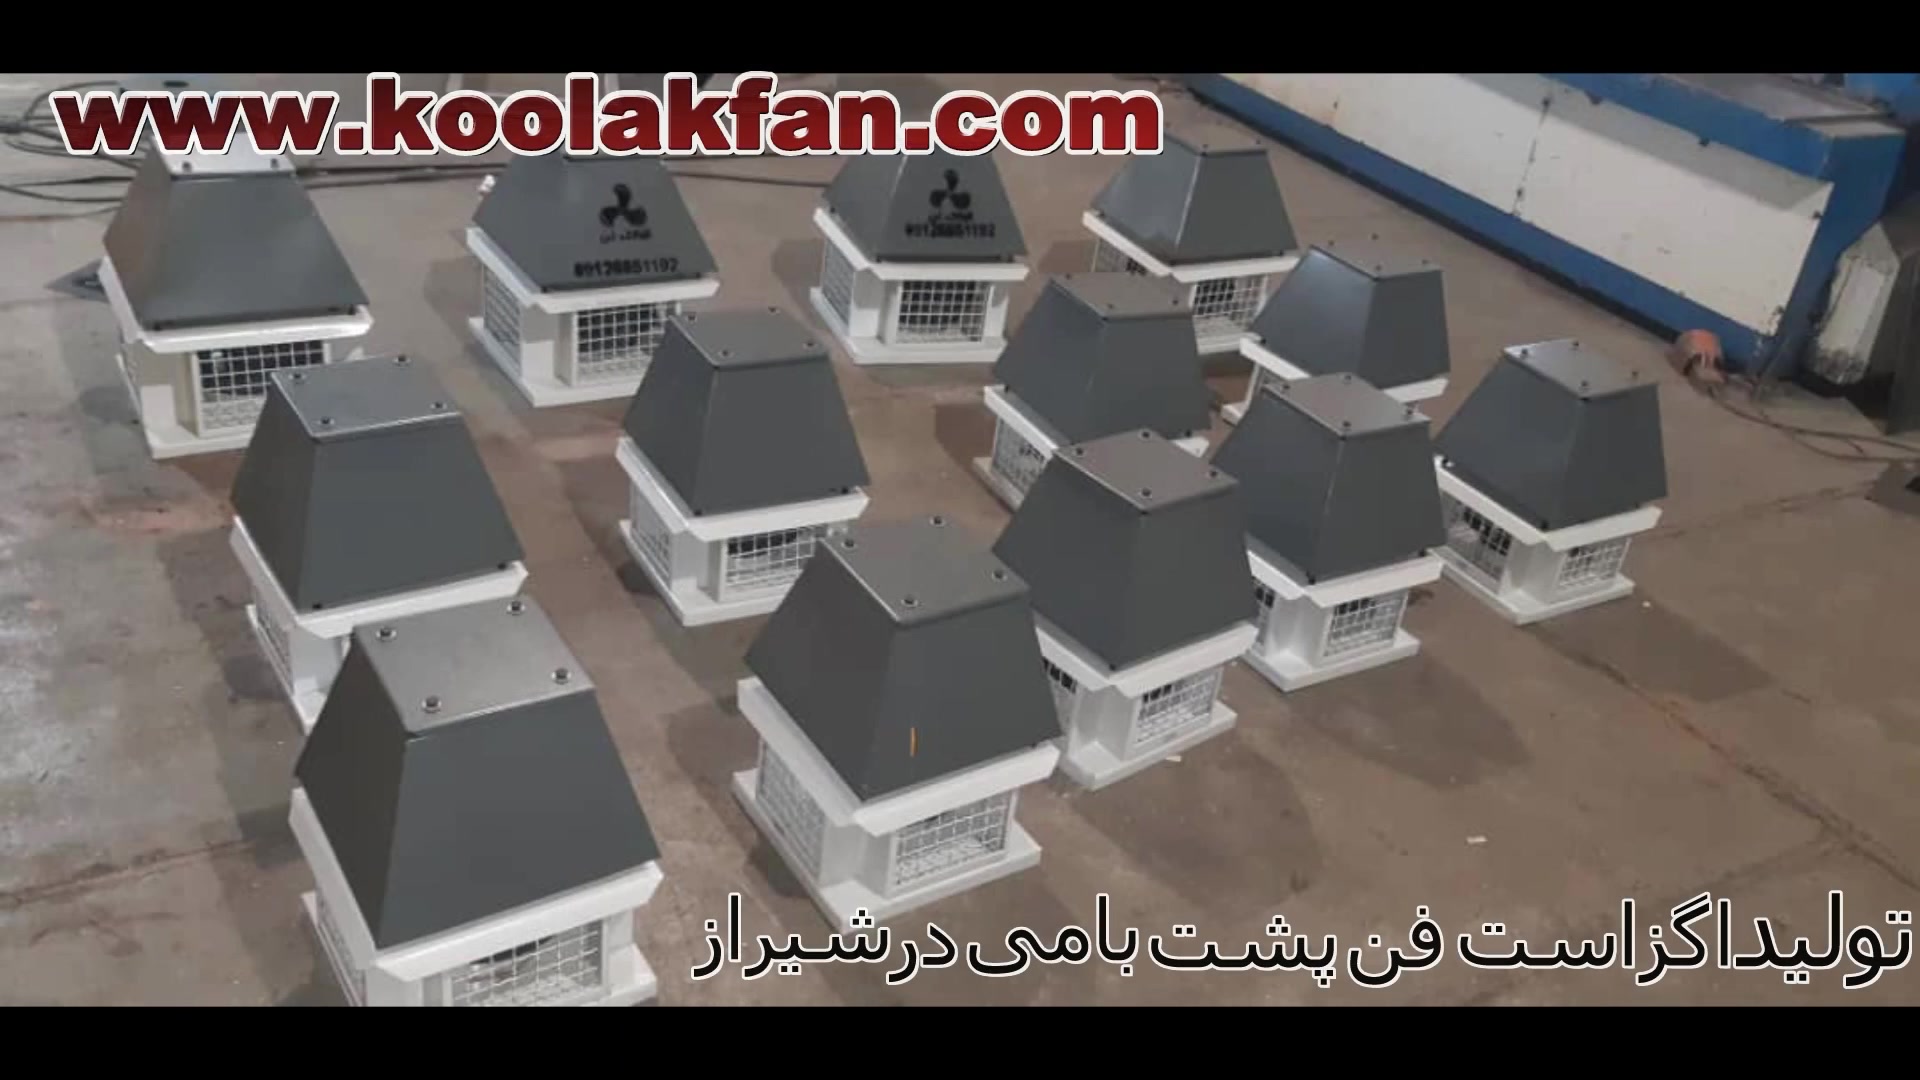 تولید اگزاست فن سقفی در کرمانشاه 09121865671